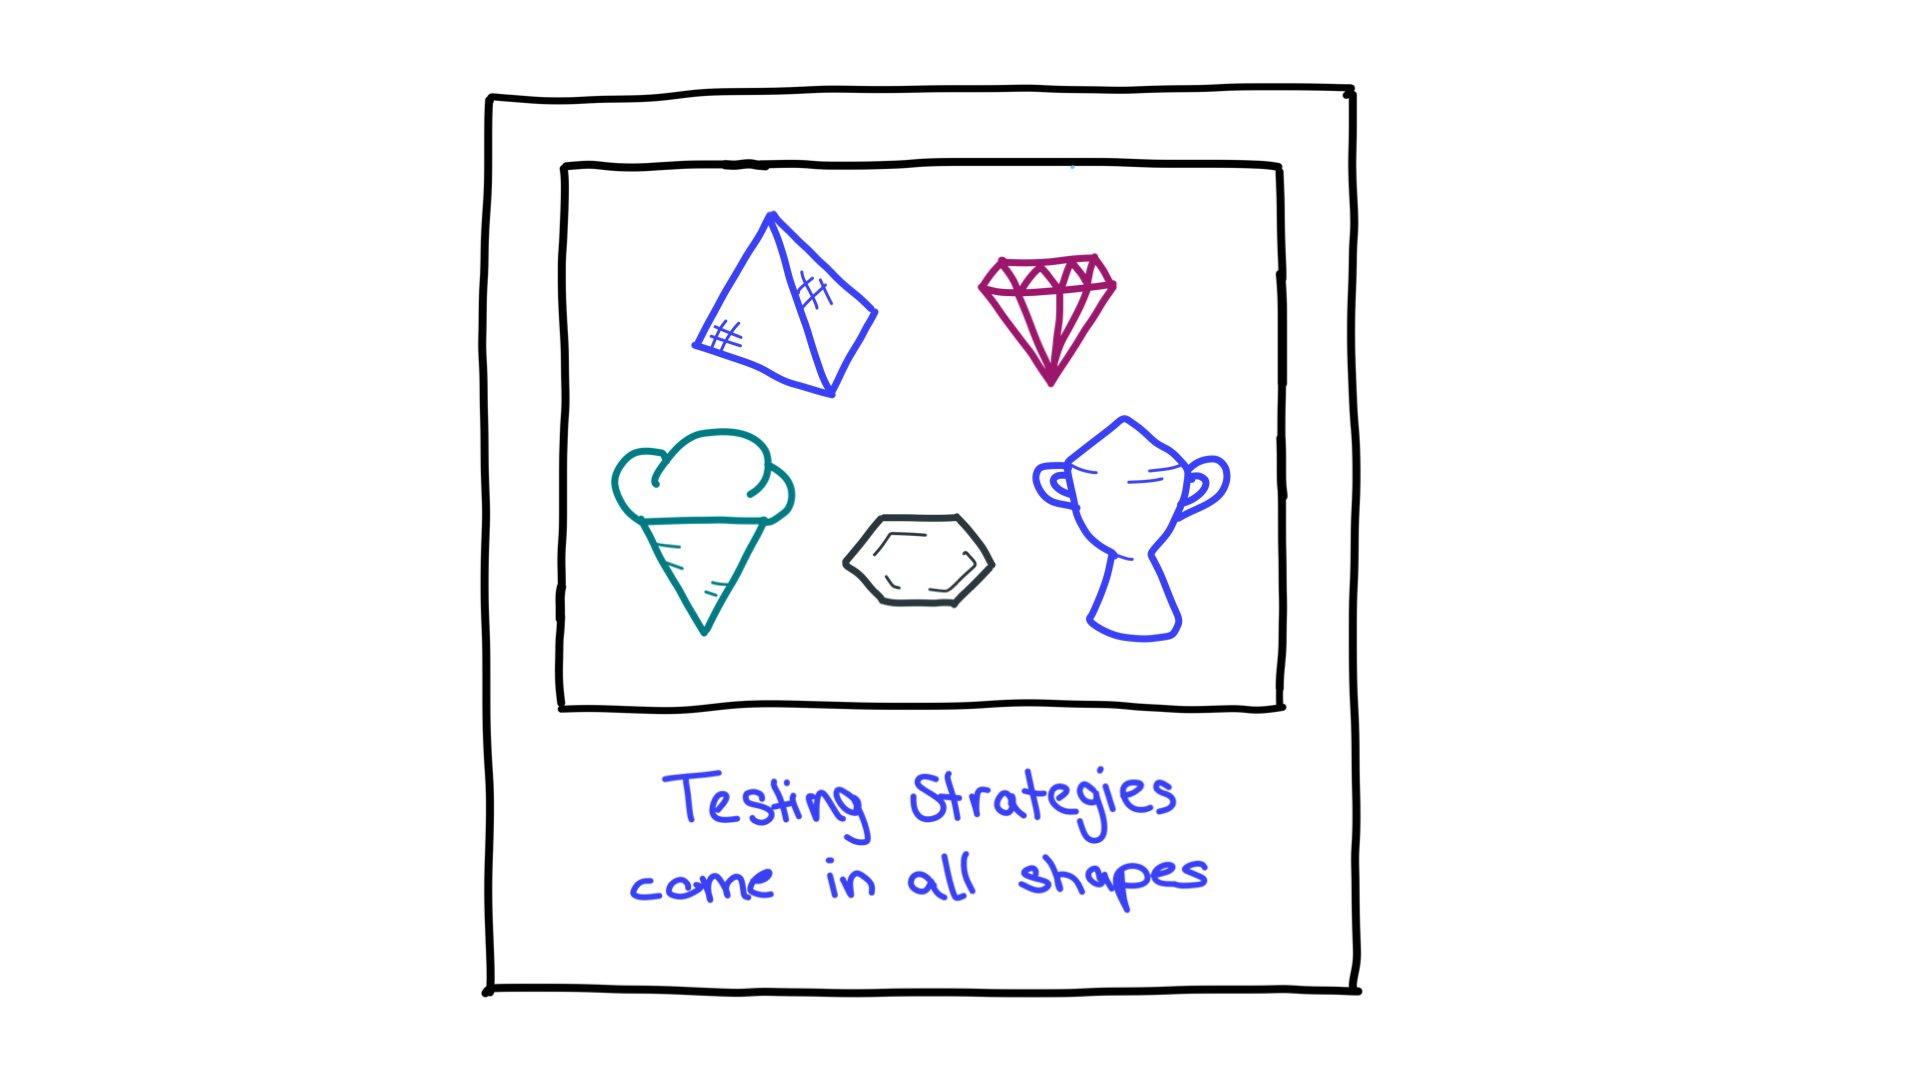 Некоторые примеры форм стратегии тестирования: пирамида, ограненный ромб, рожок мороженого, шестиугольник и трофей.